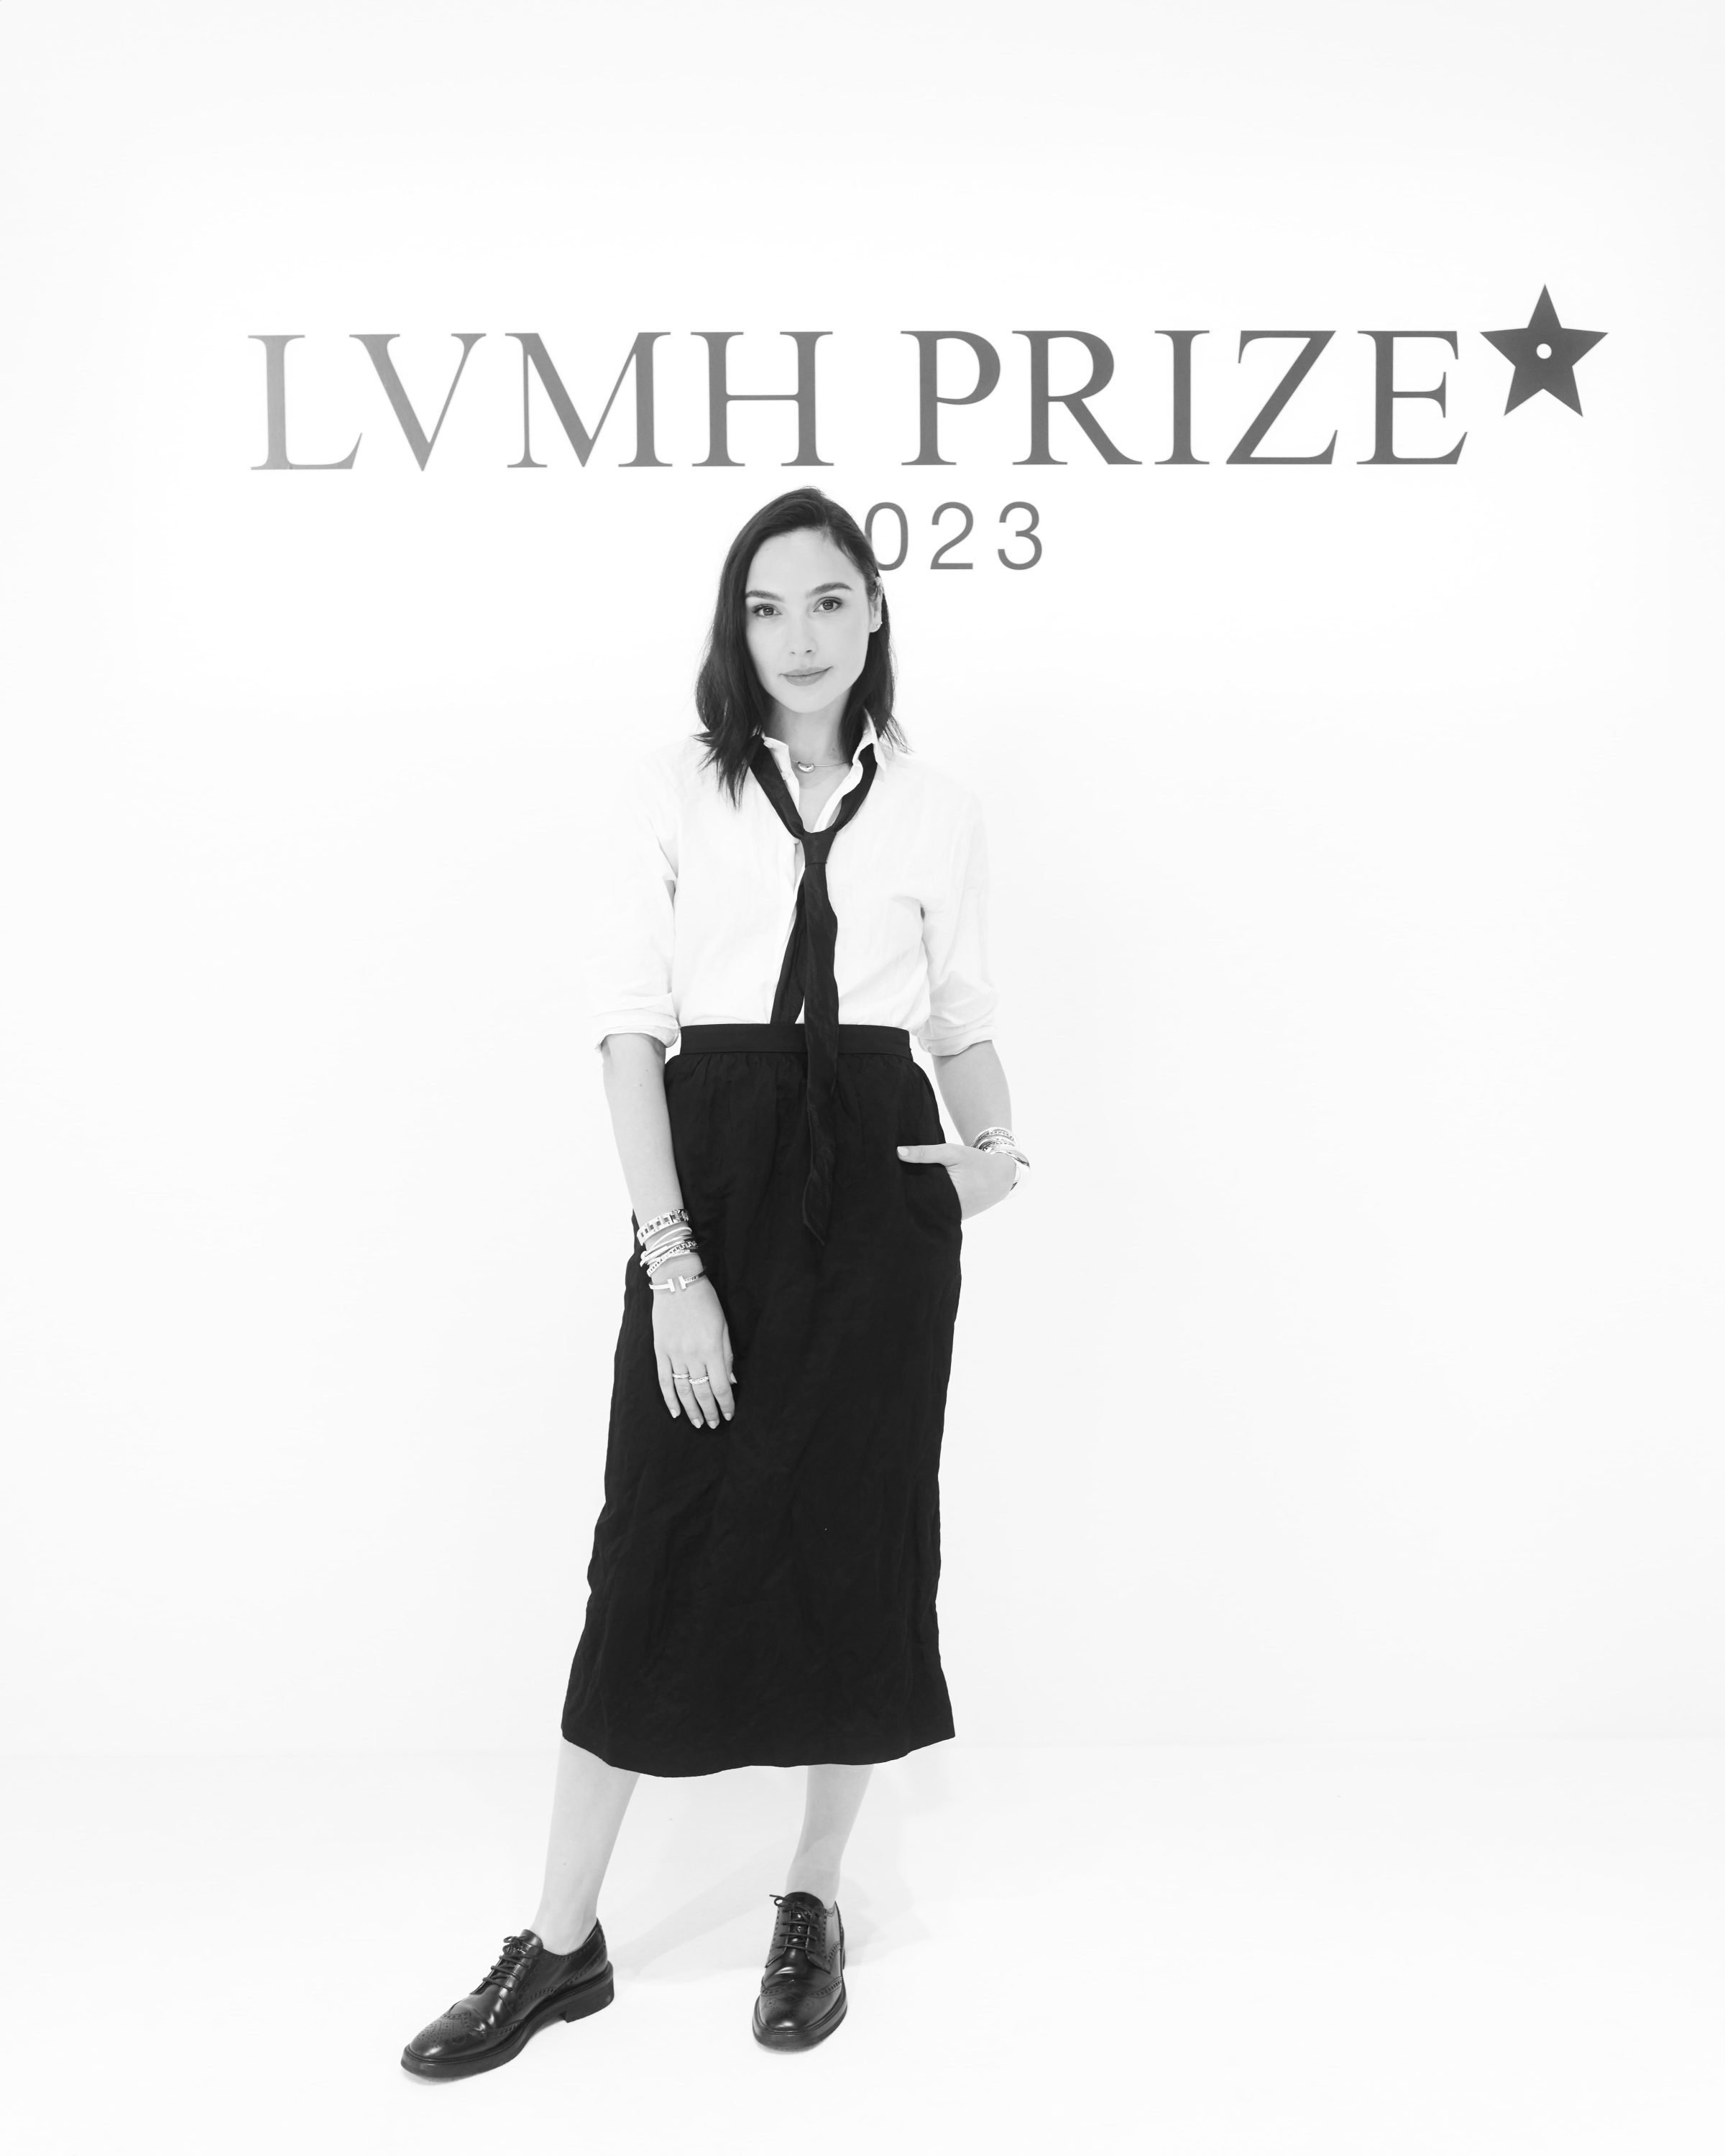 Setchu by Satoshi Kuwata Wins 2023 LVMH Prize